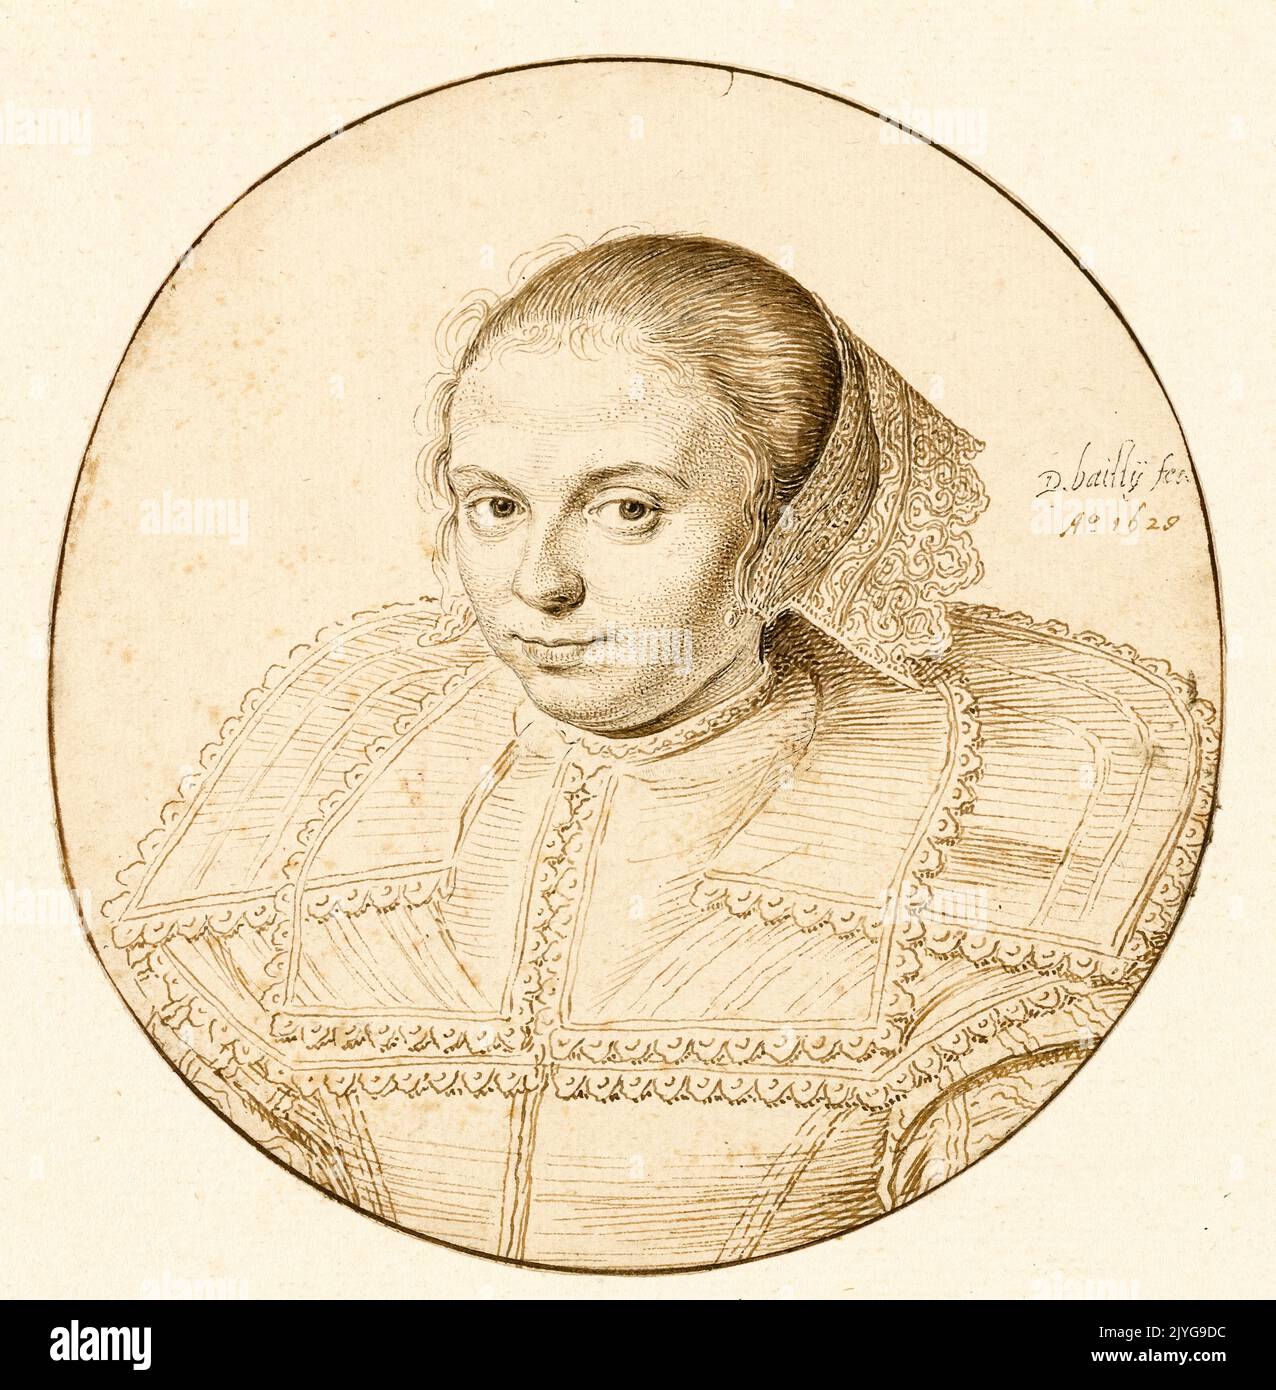 David Bailly, Ritratto di una donna, disegno in penna e inchiostro, 1629 Foto Stock